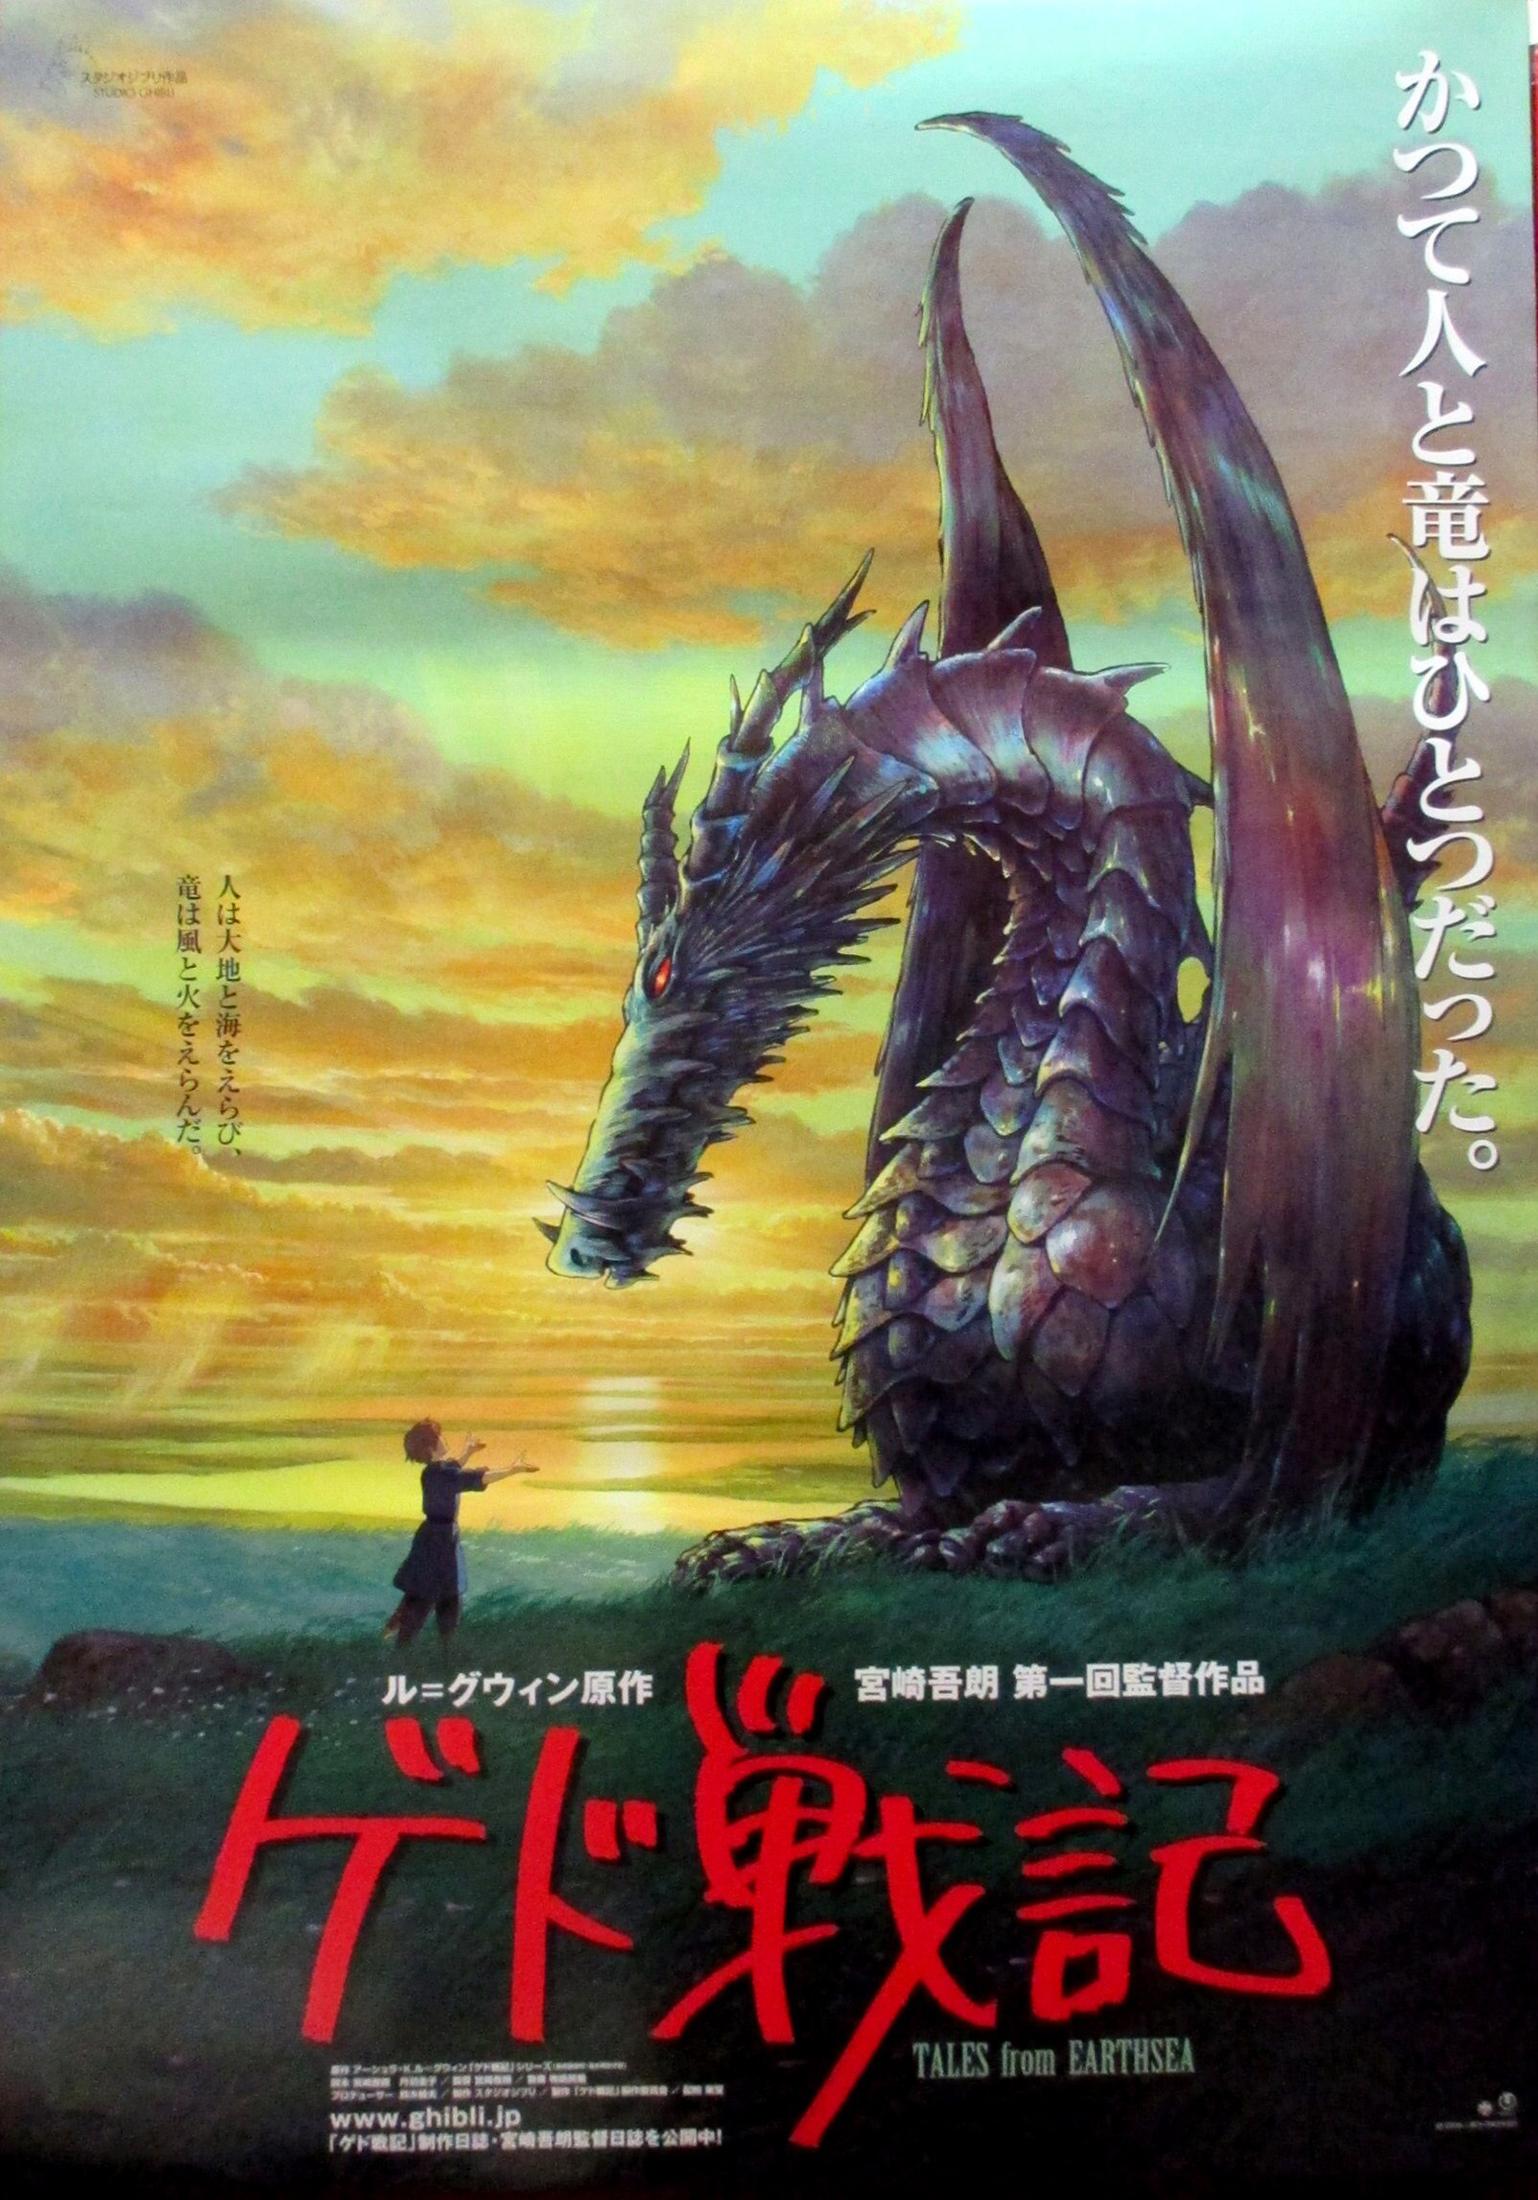 Unknown Print - Tales from Earthsea Original Vintage Poster, Goro Miyazaki, Studio Ghibli